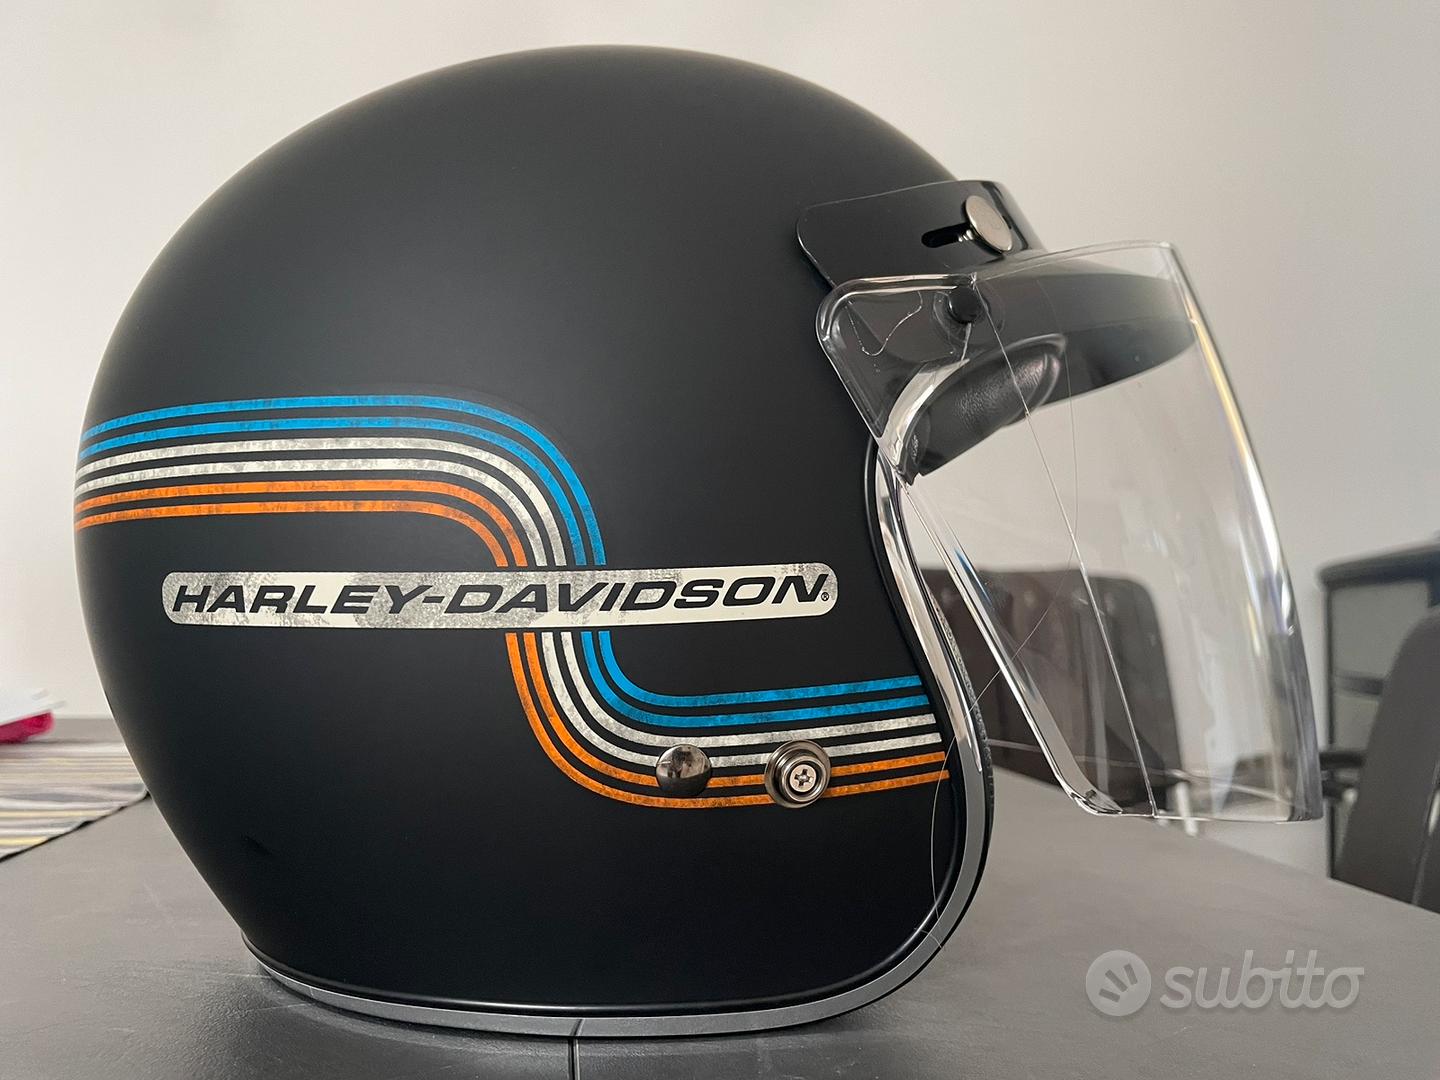 Casco (coppia caschi) Harley Davidson - Accessori Moto In vendita a Milano